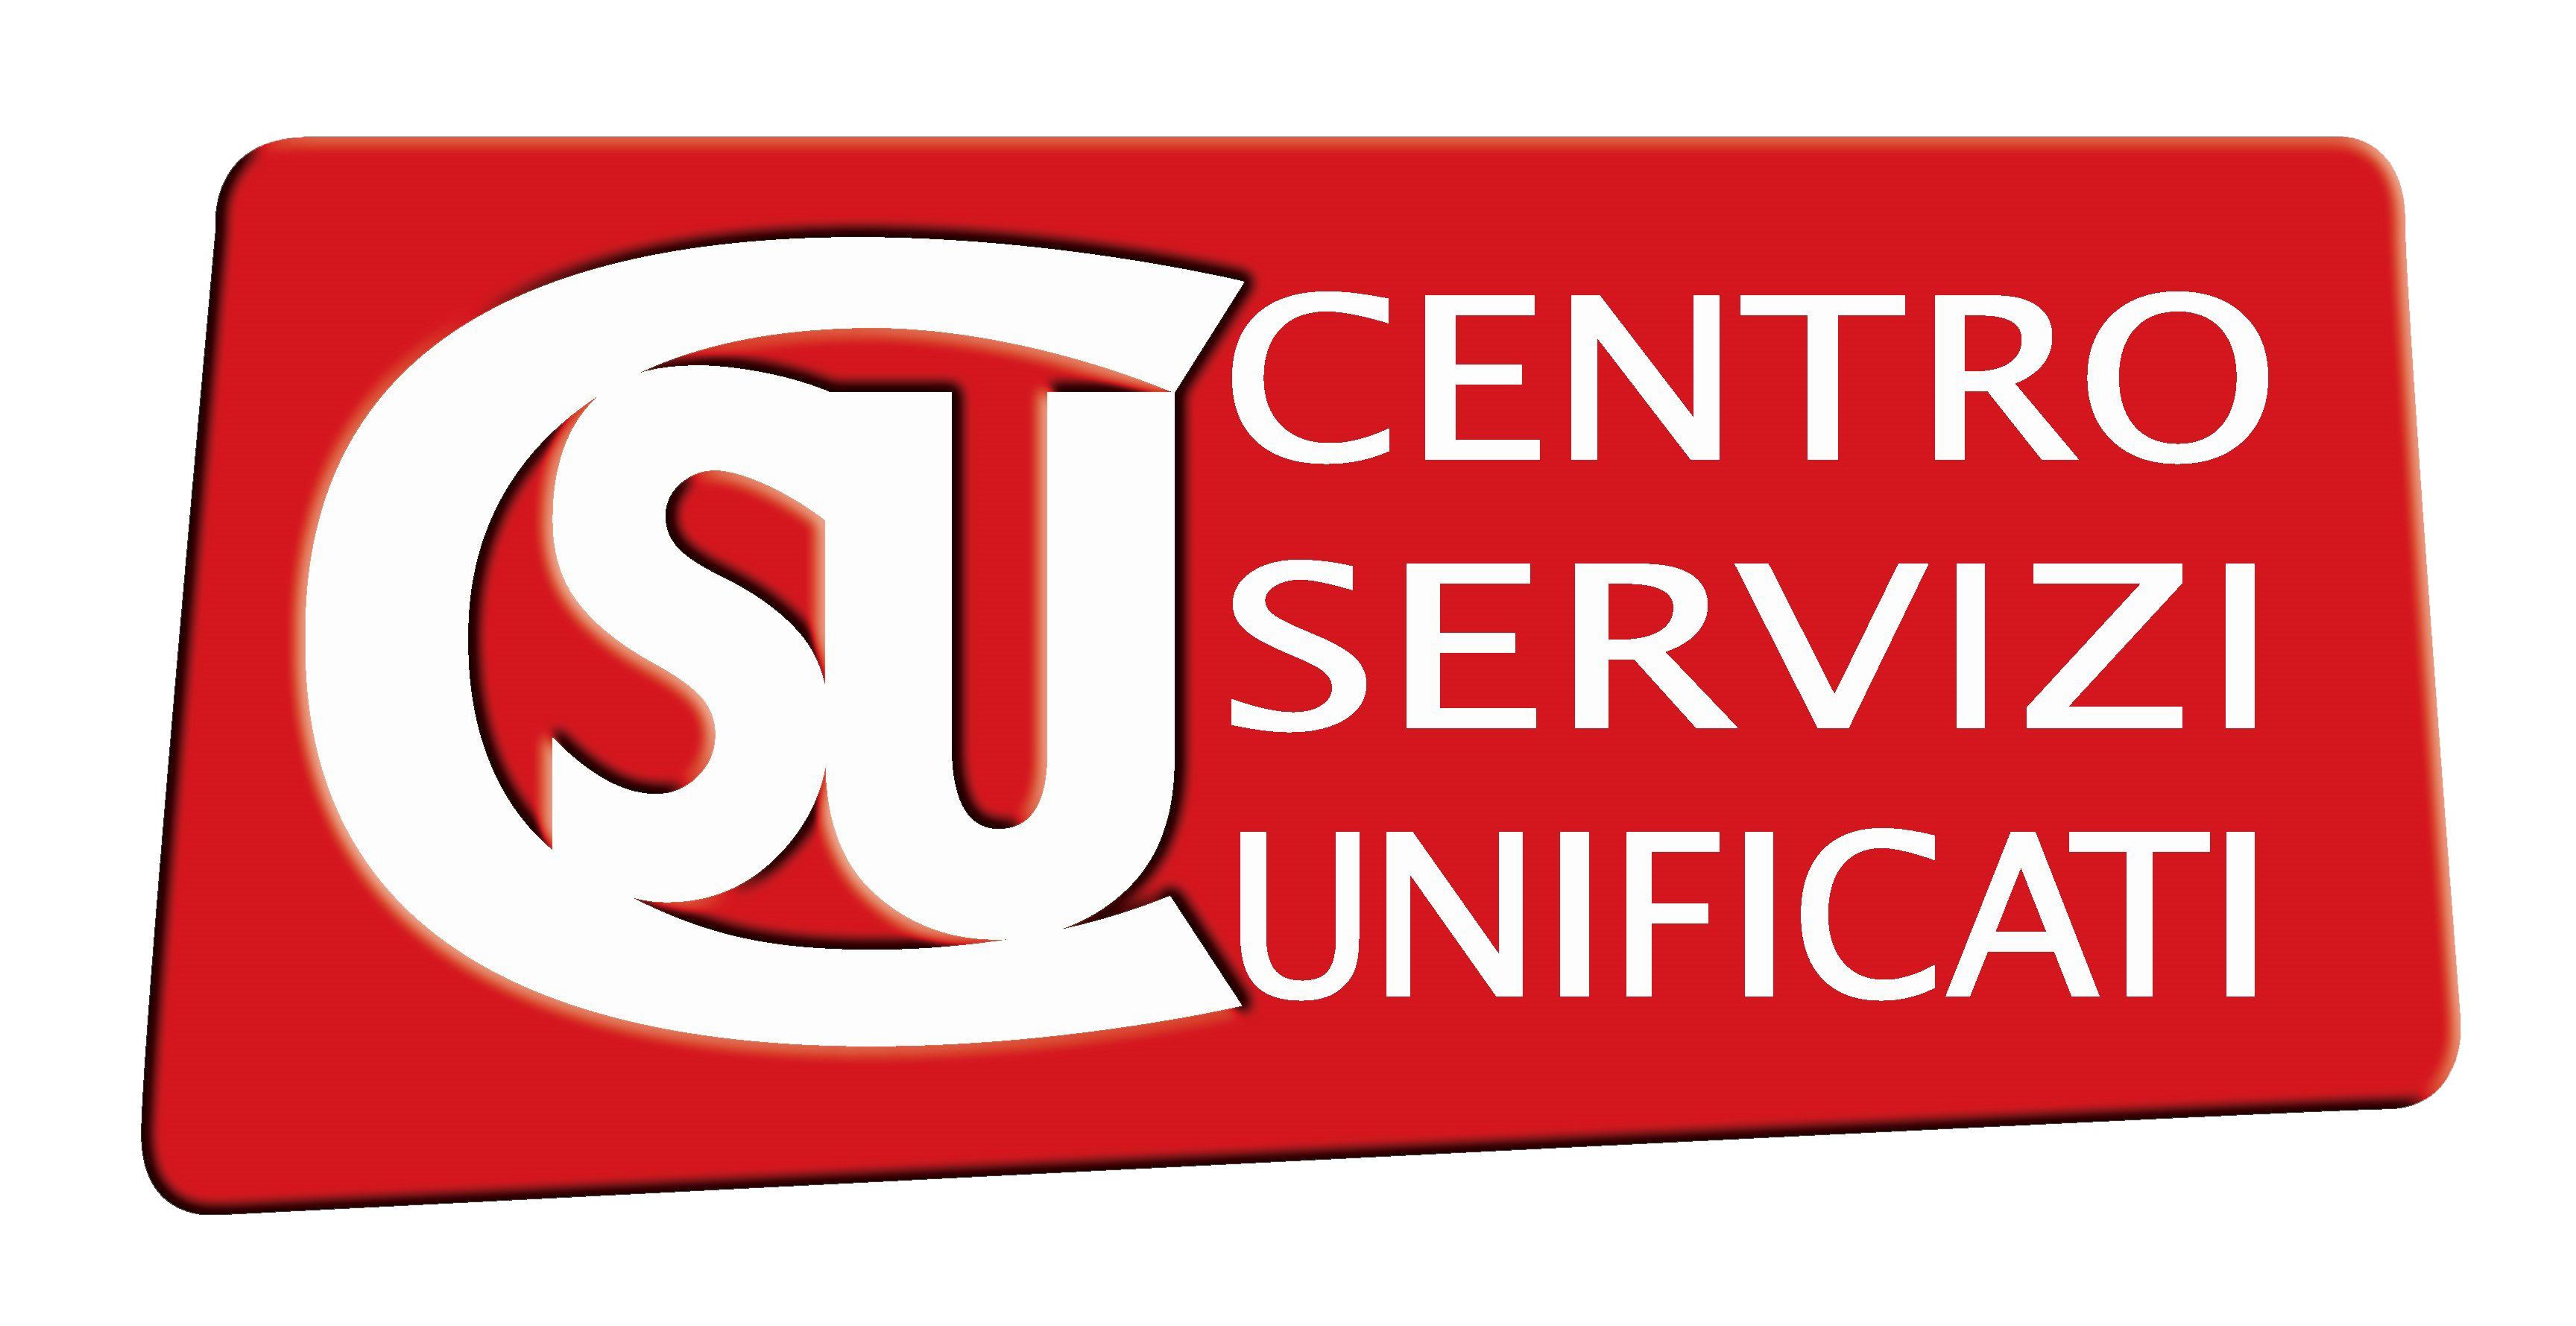 Logo_CSU